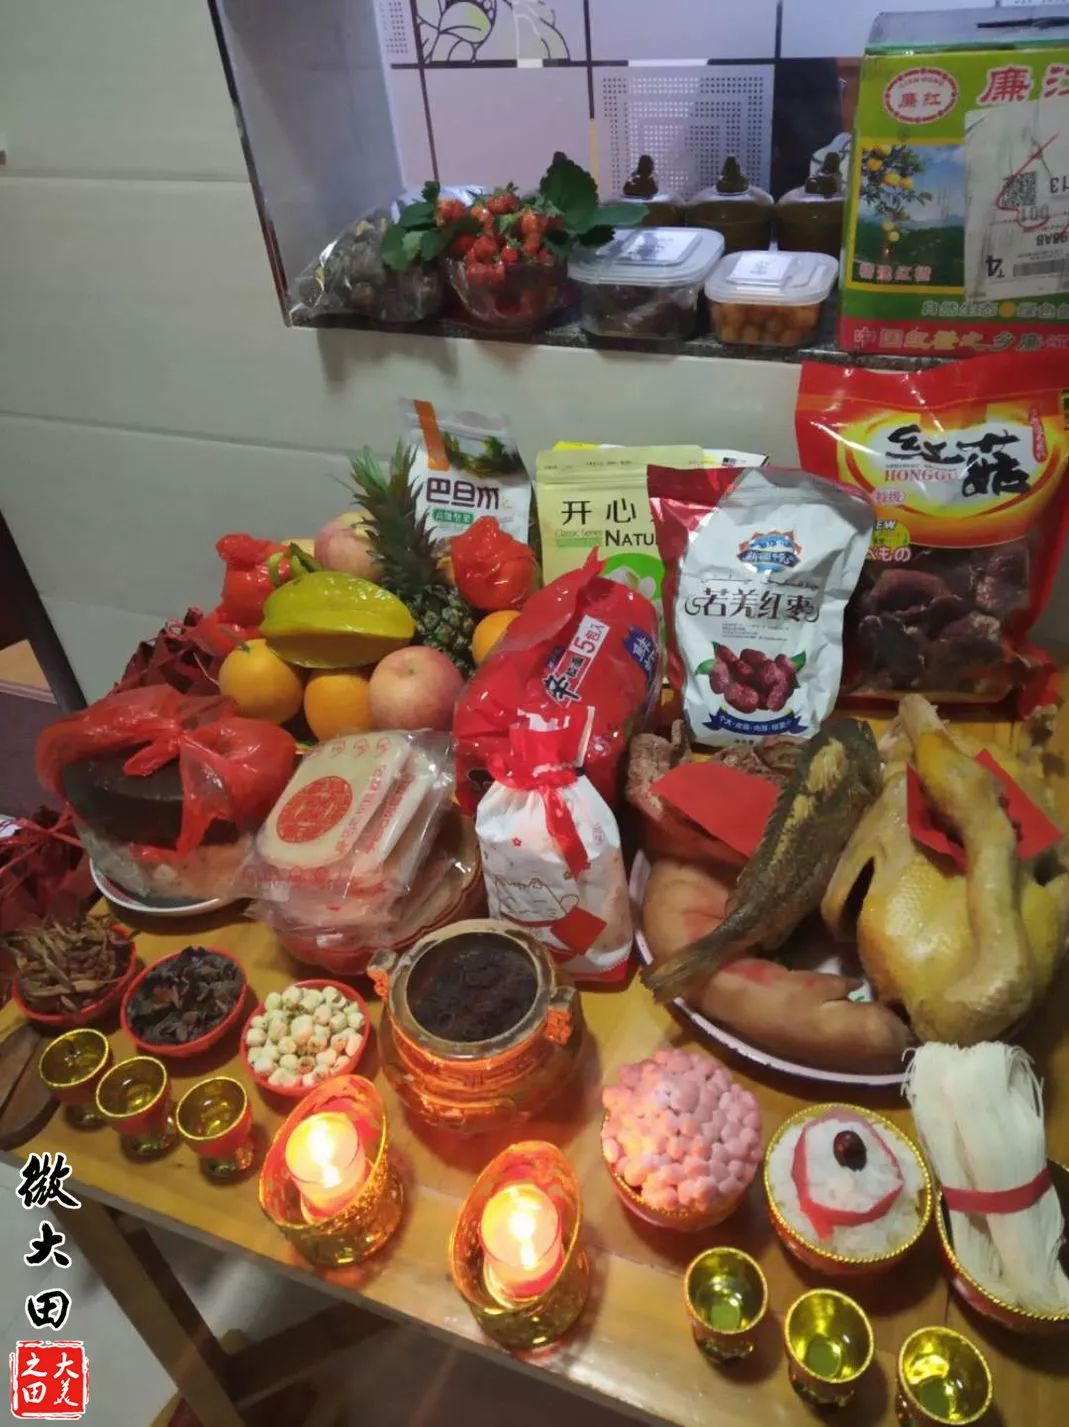 祭拜天公的供品,包括猪肉,鸡鸭,鱼虾,甘蔗,柑橘,红龟粿等等.